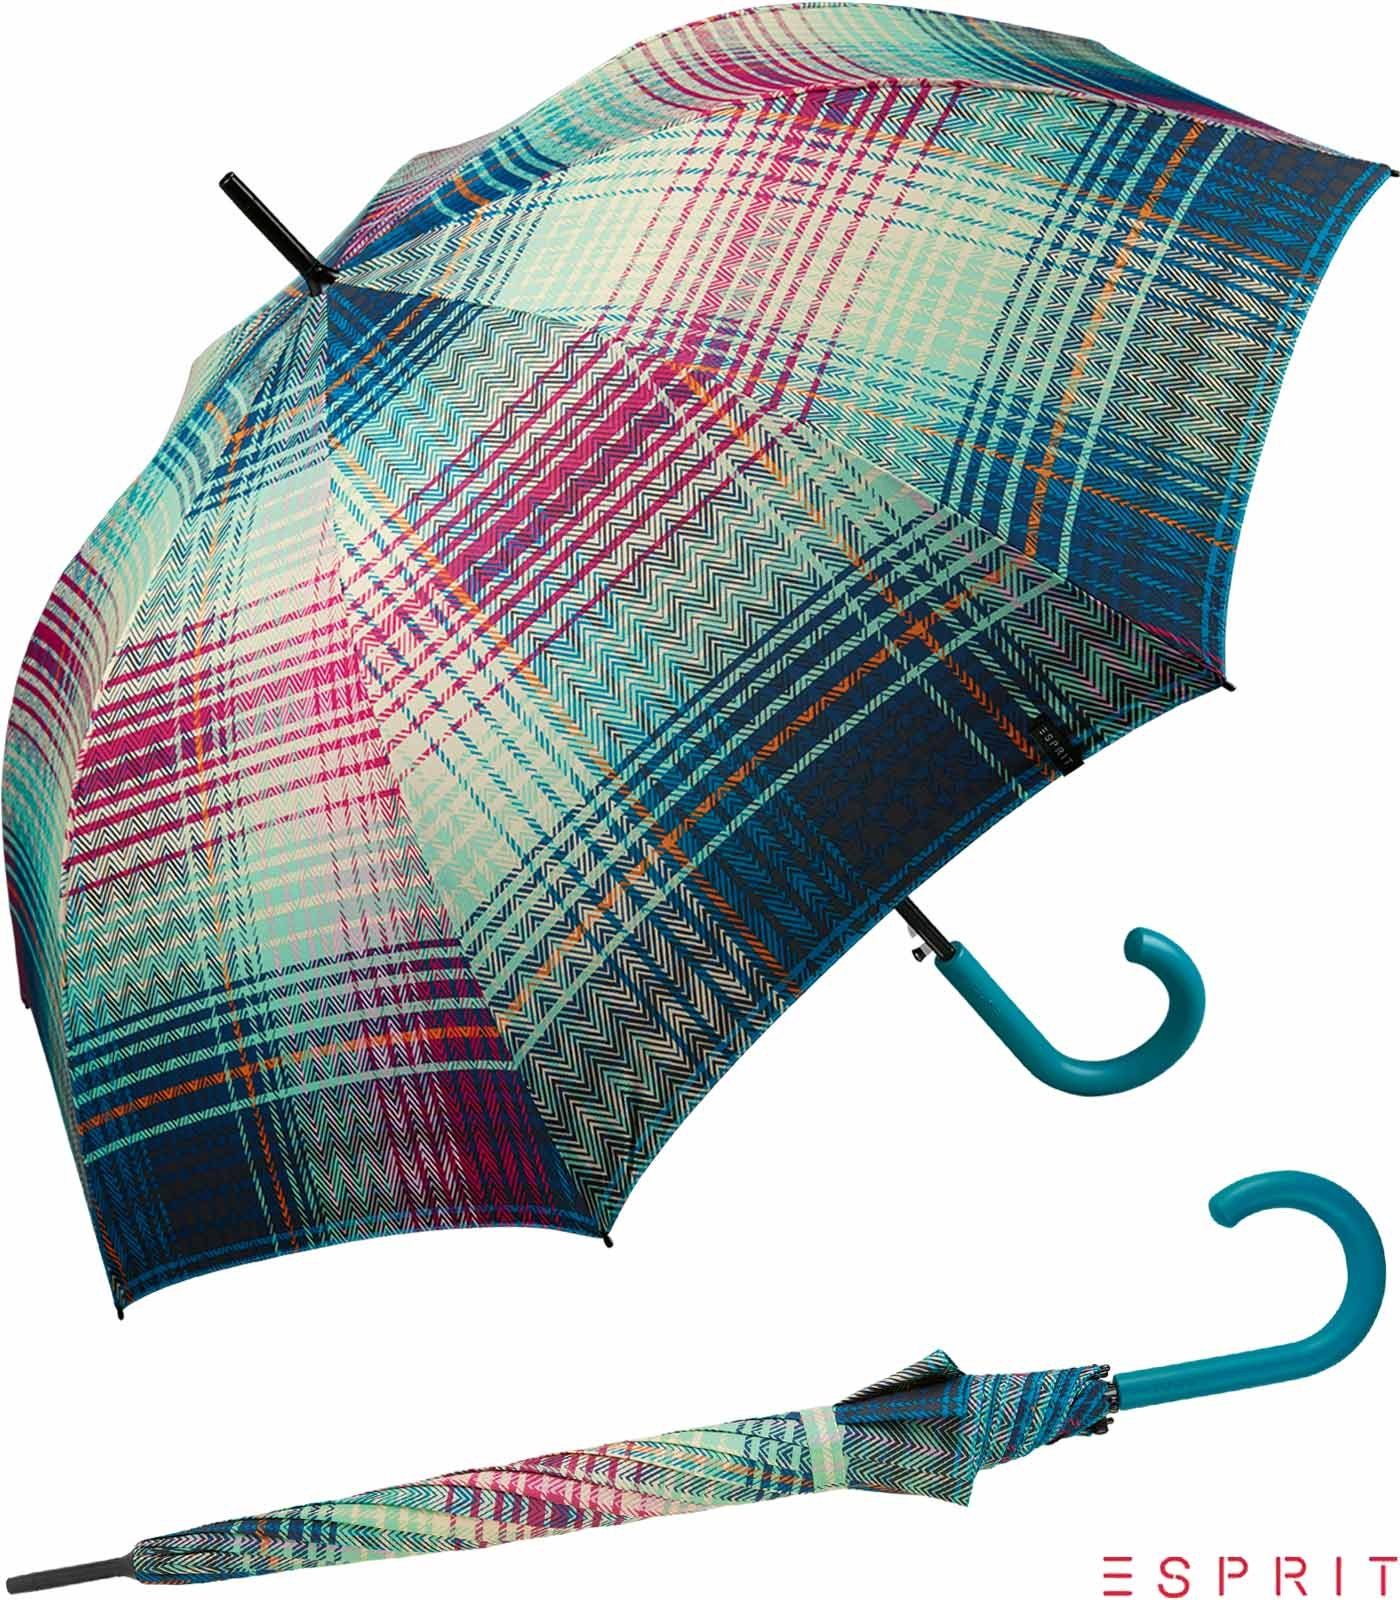 Esprit Langregenschirm Damen mit Auf-Automatik - Cosy Checks - ocean depths, groß, stabil, in bunter Karo-Optik türkis-bunt | Stockschirme